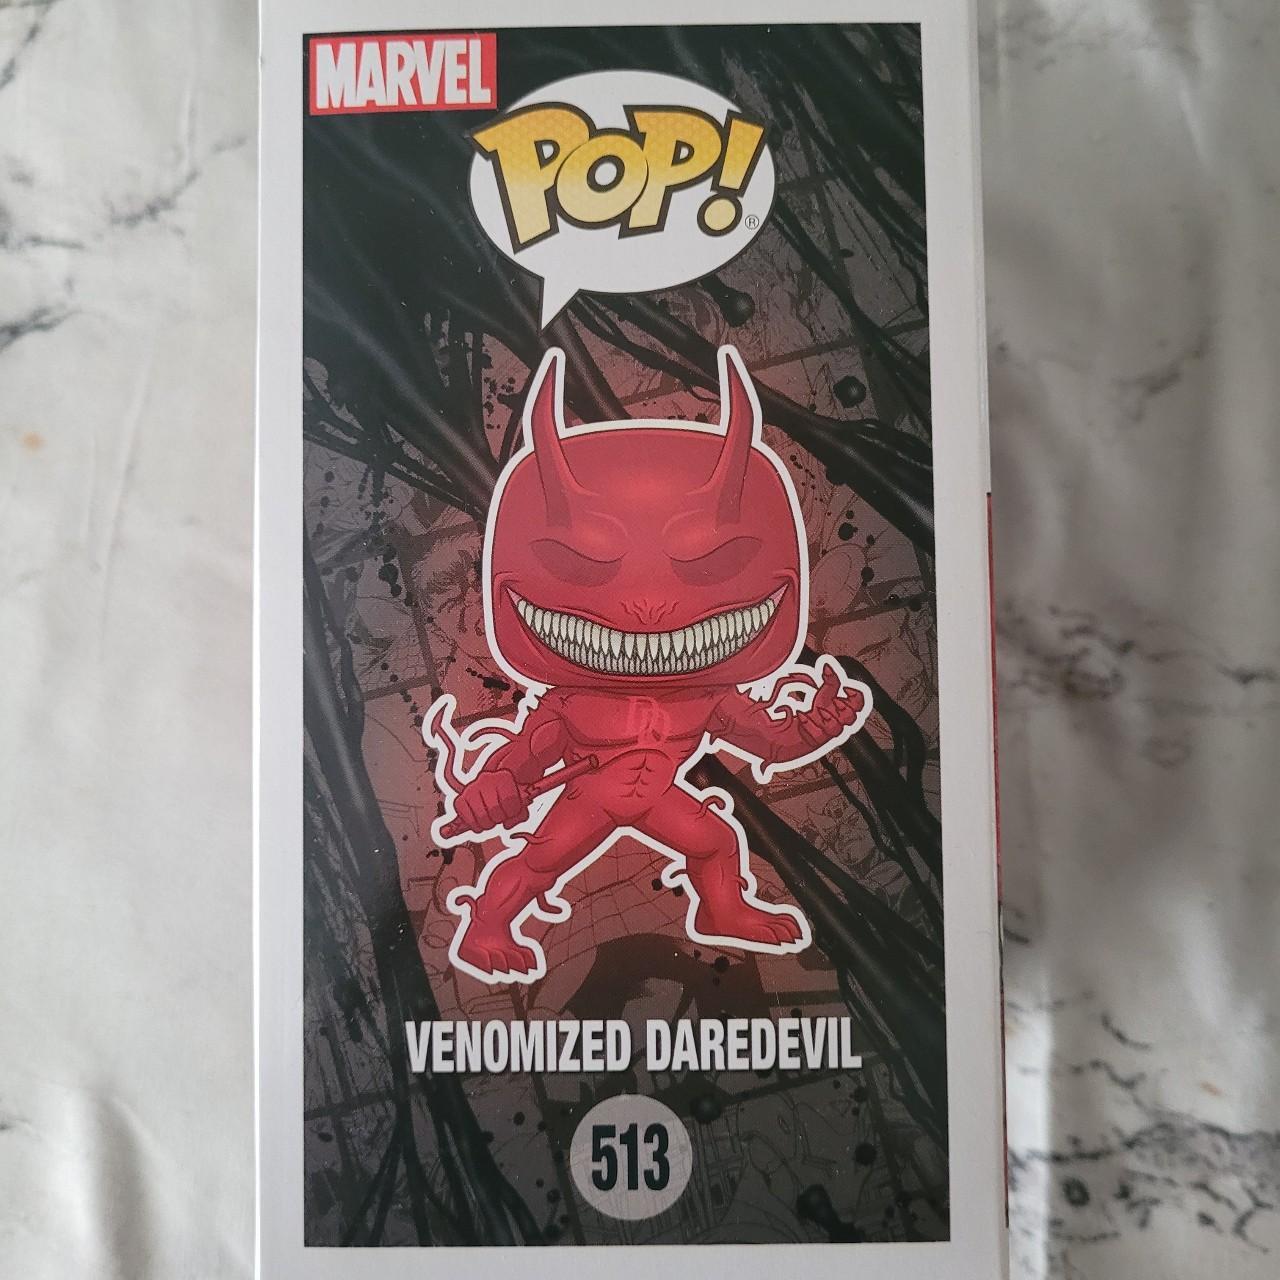 Funko Pop! Marvel Venom Venomized Daredevil